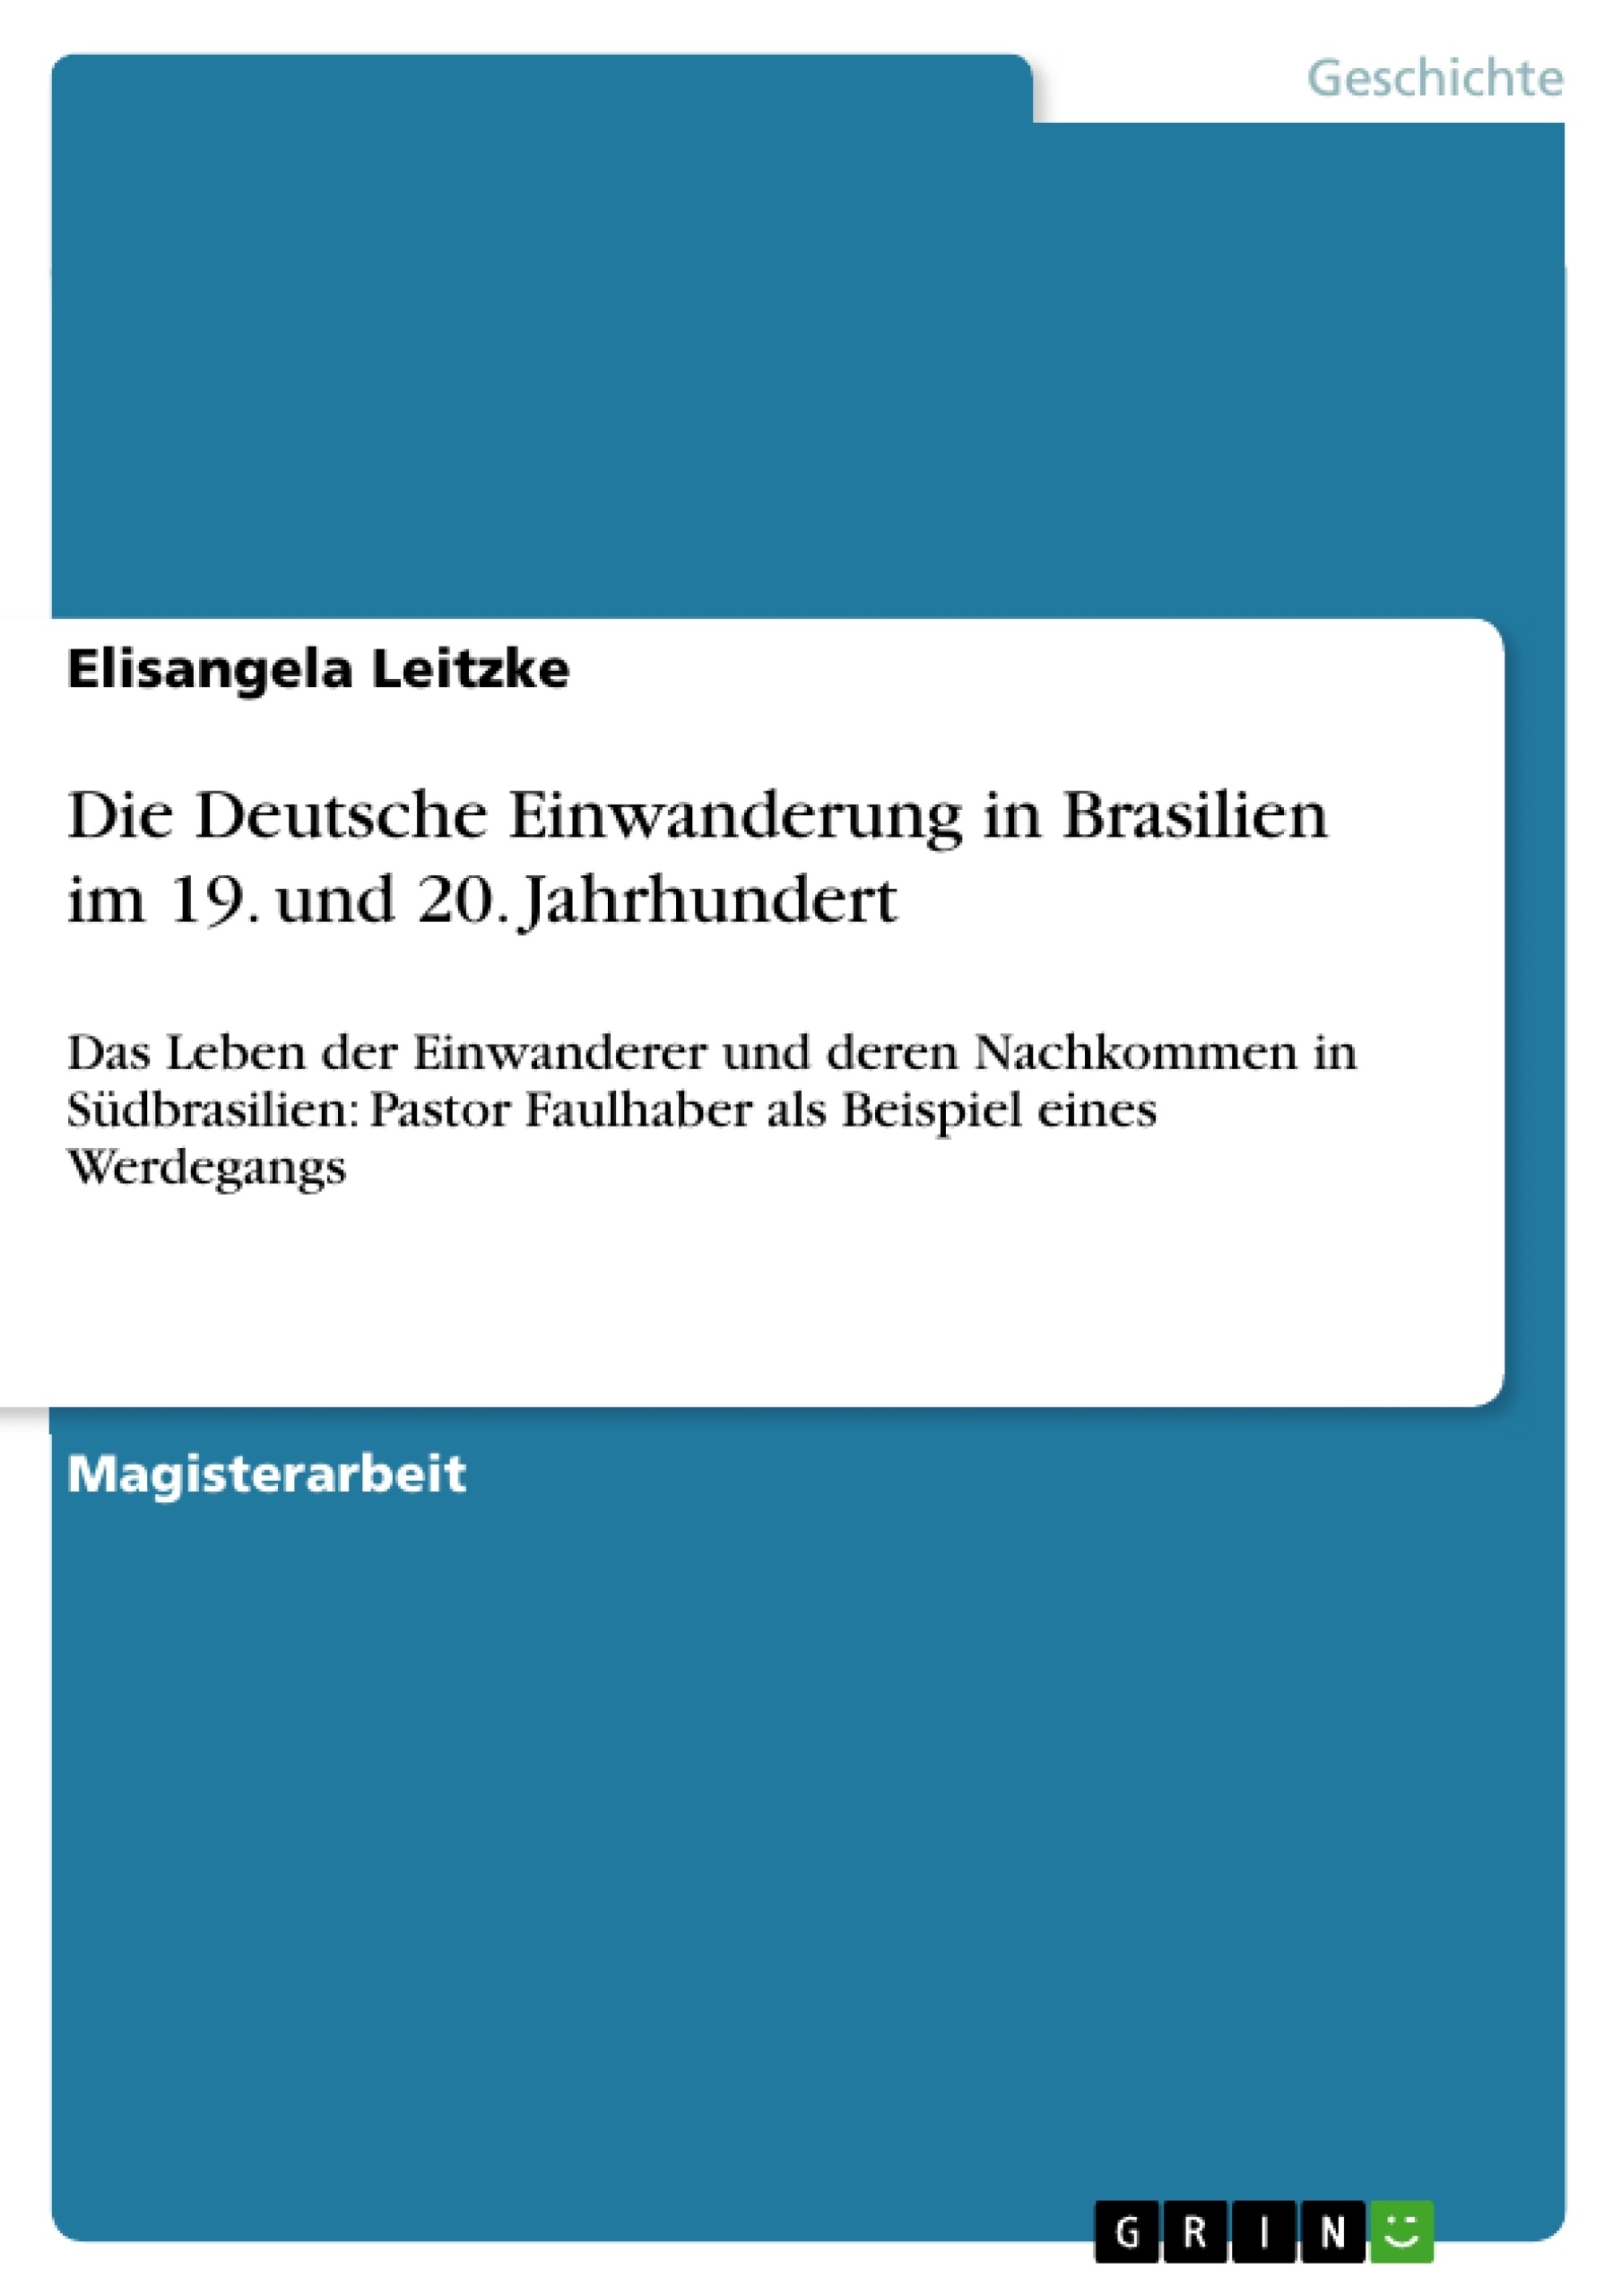 Titre: Die Deutsche Einwanderung in Brasilien im 19. und 20. Jahrhundert